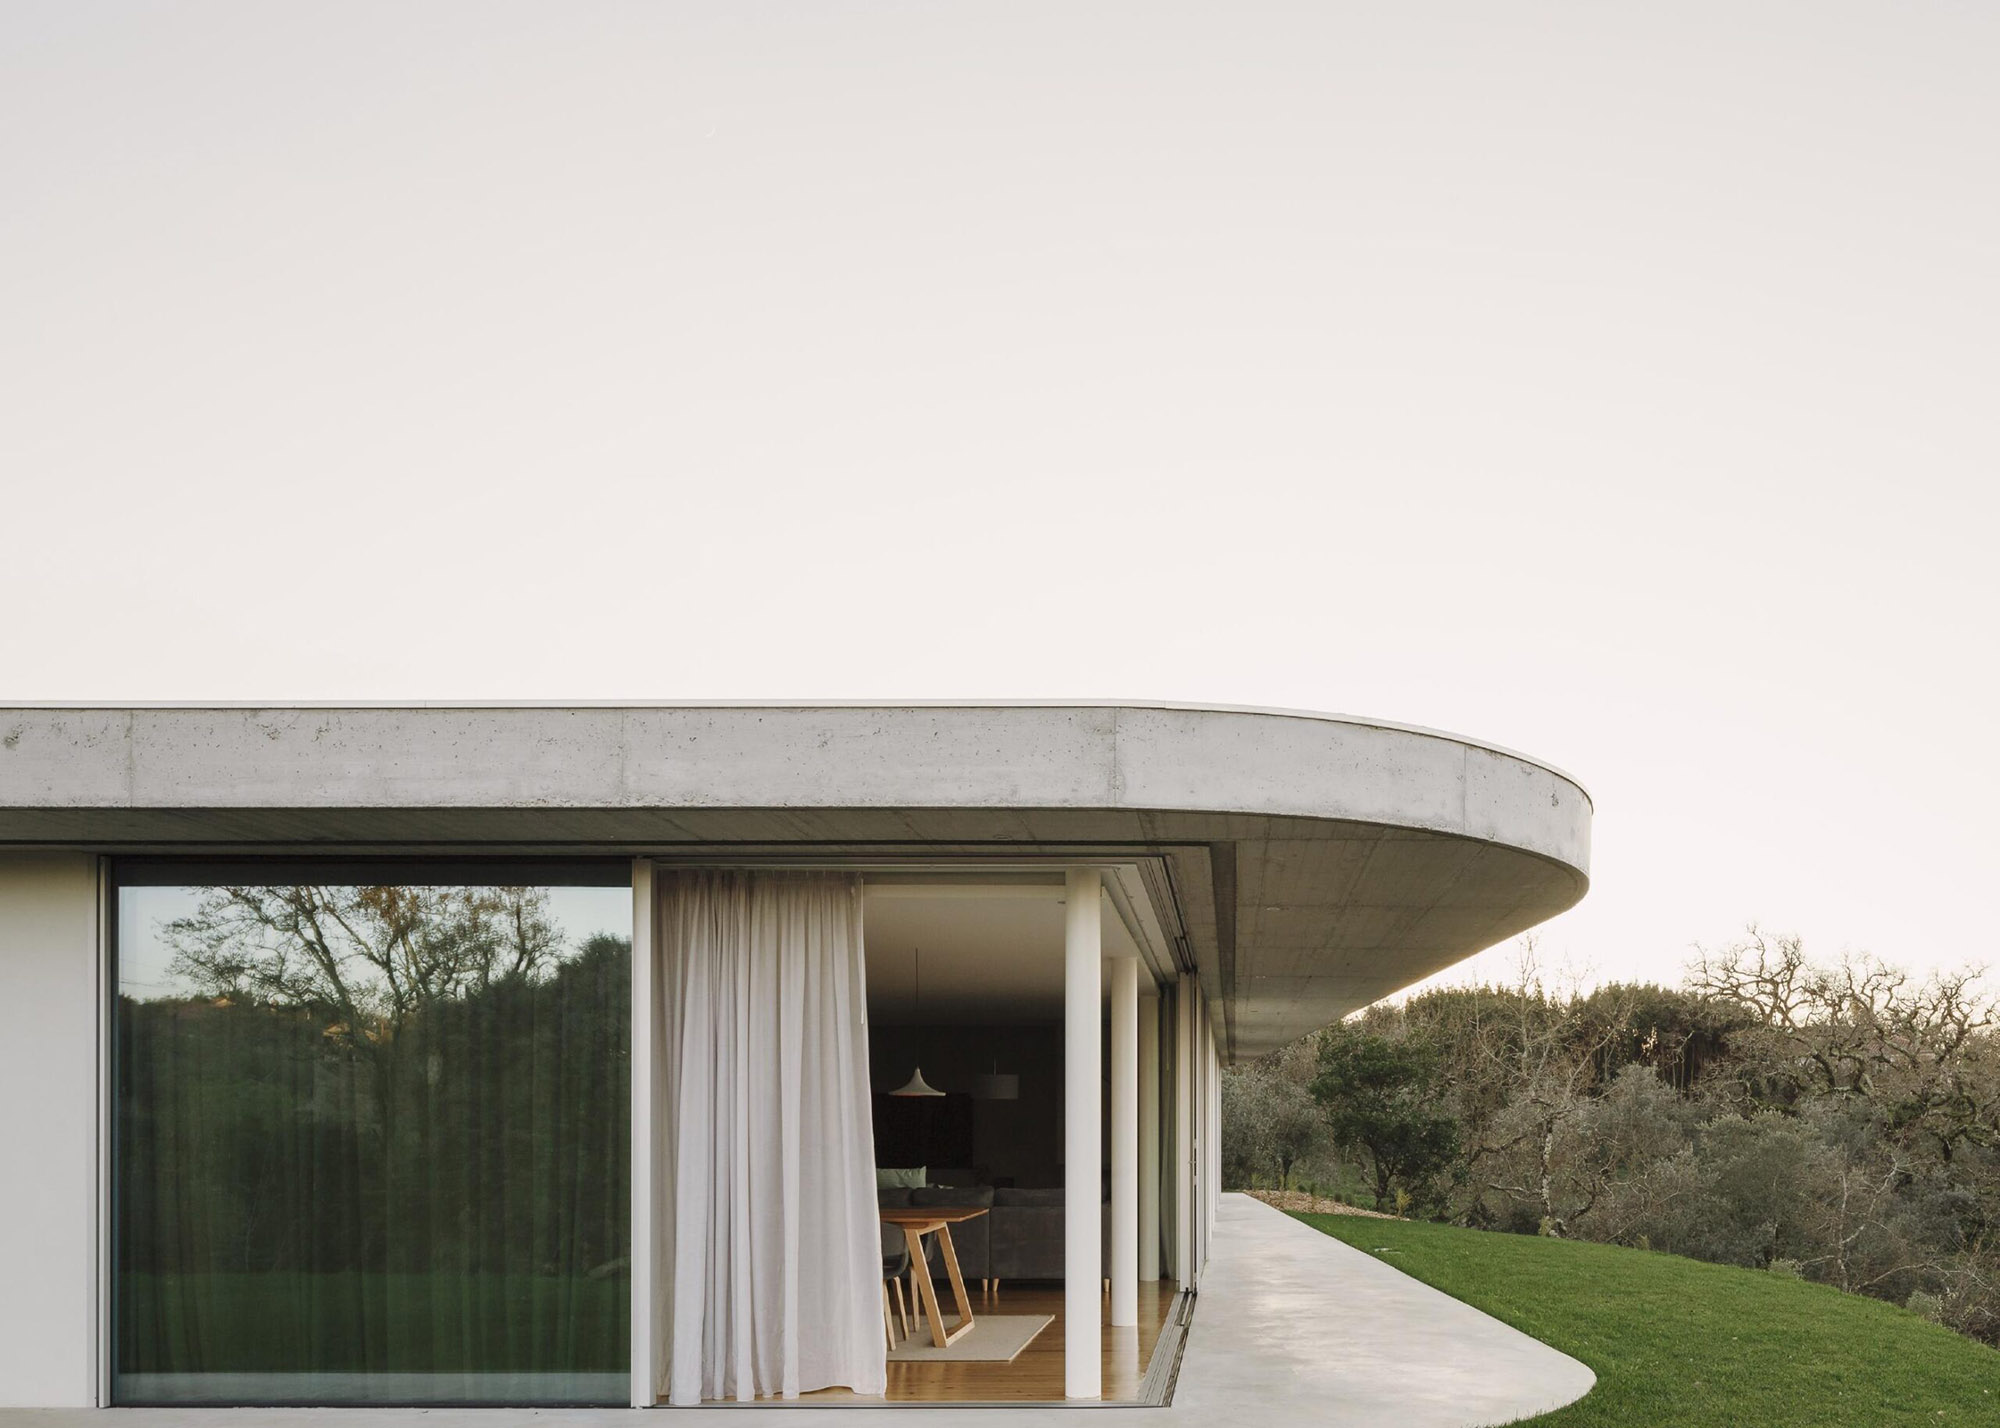 別墅設計,別墅設計案例,Bruno Dias,葡萄牙,國外別墅設計案例,別墅裝修,平層別墅,混凝土,野獸派風格,極簡風格